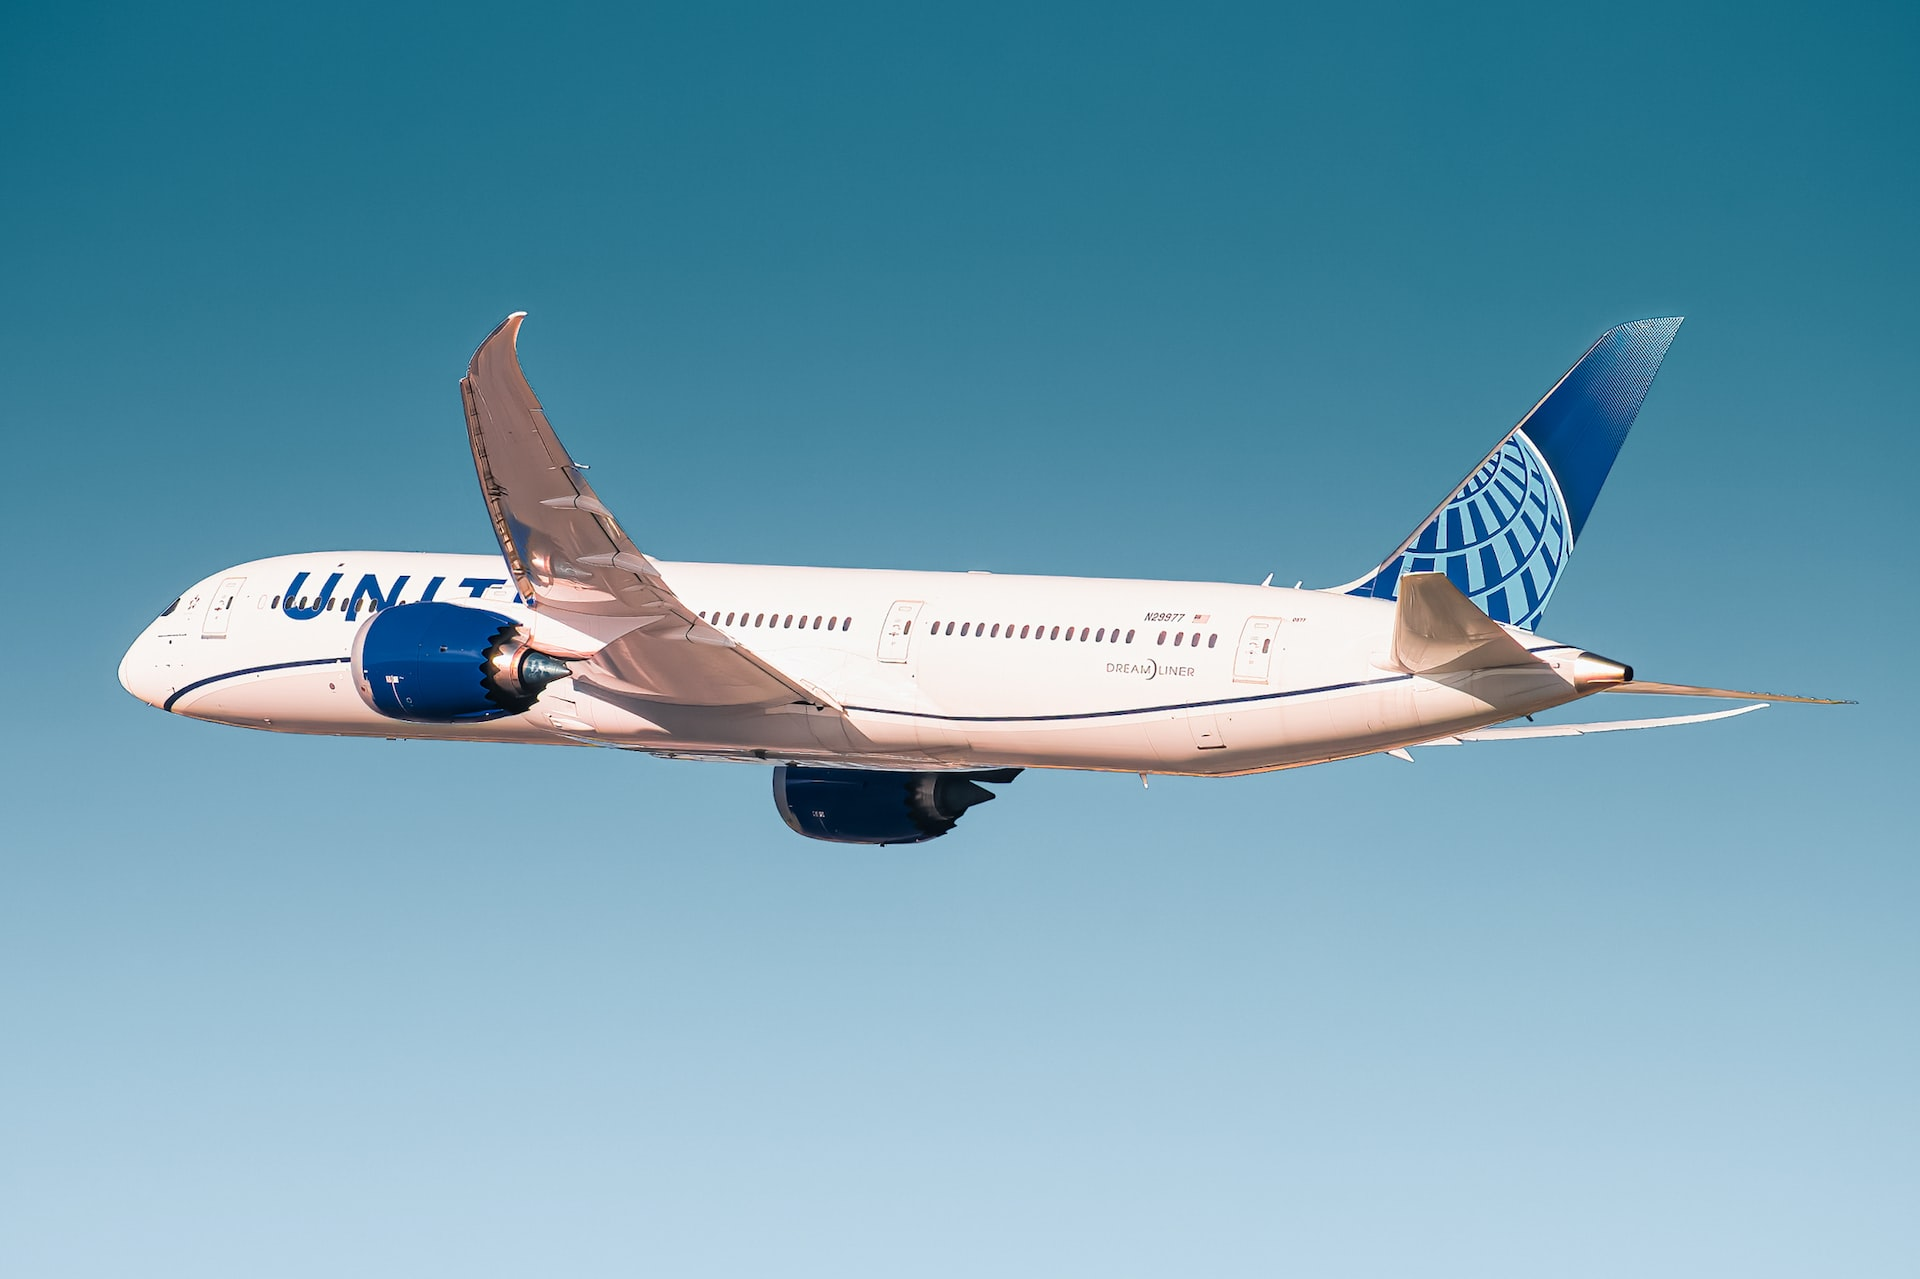 A Boeing 787 in flight.